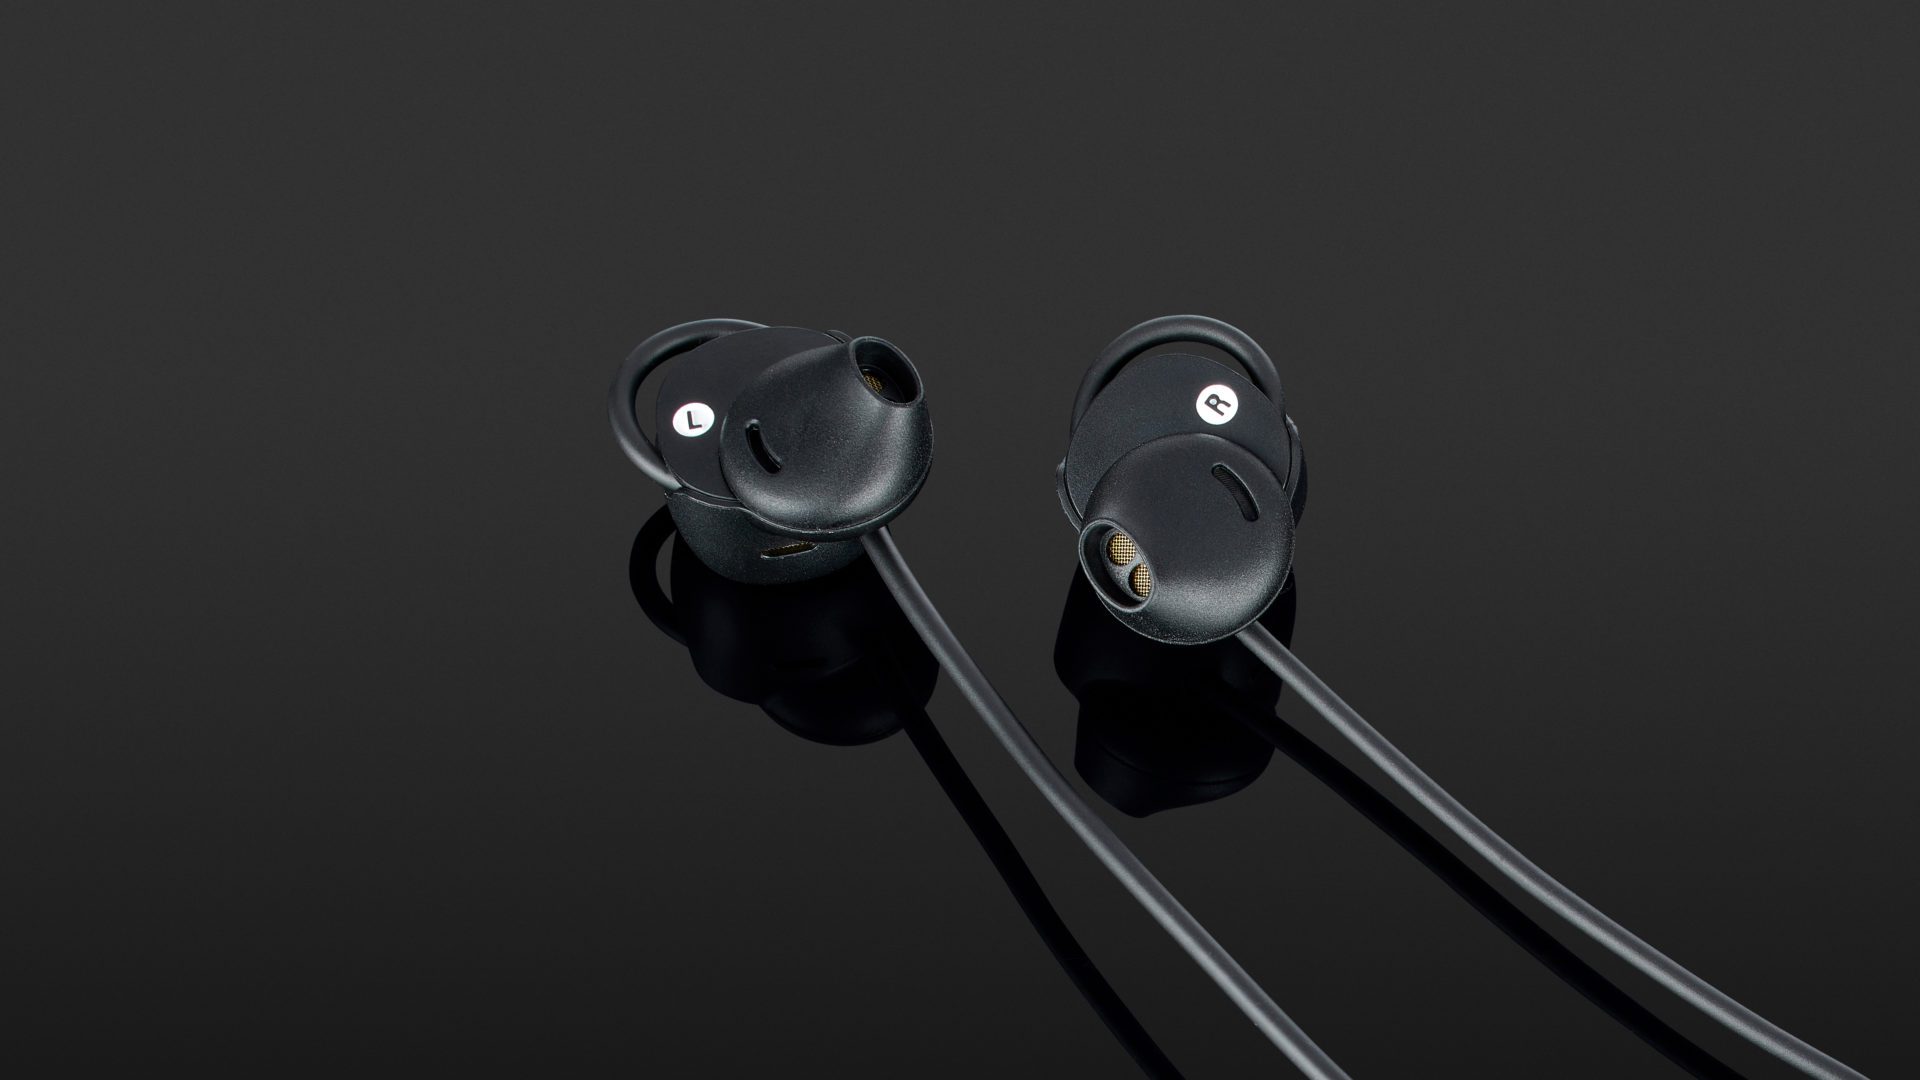  Marshall Minor II Bluetooth In-Ear Headphone, Black